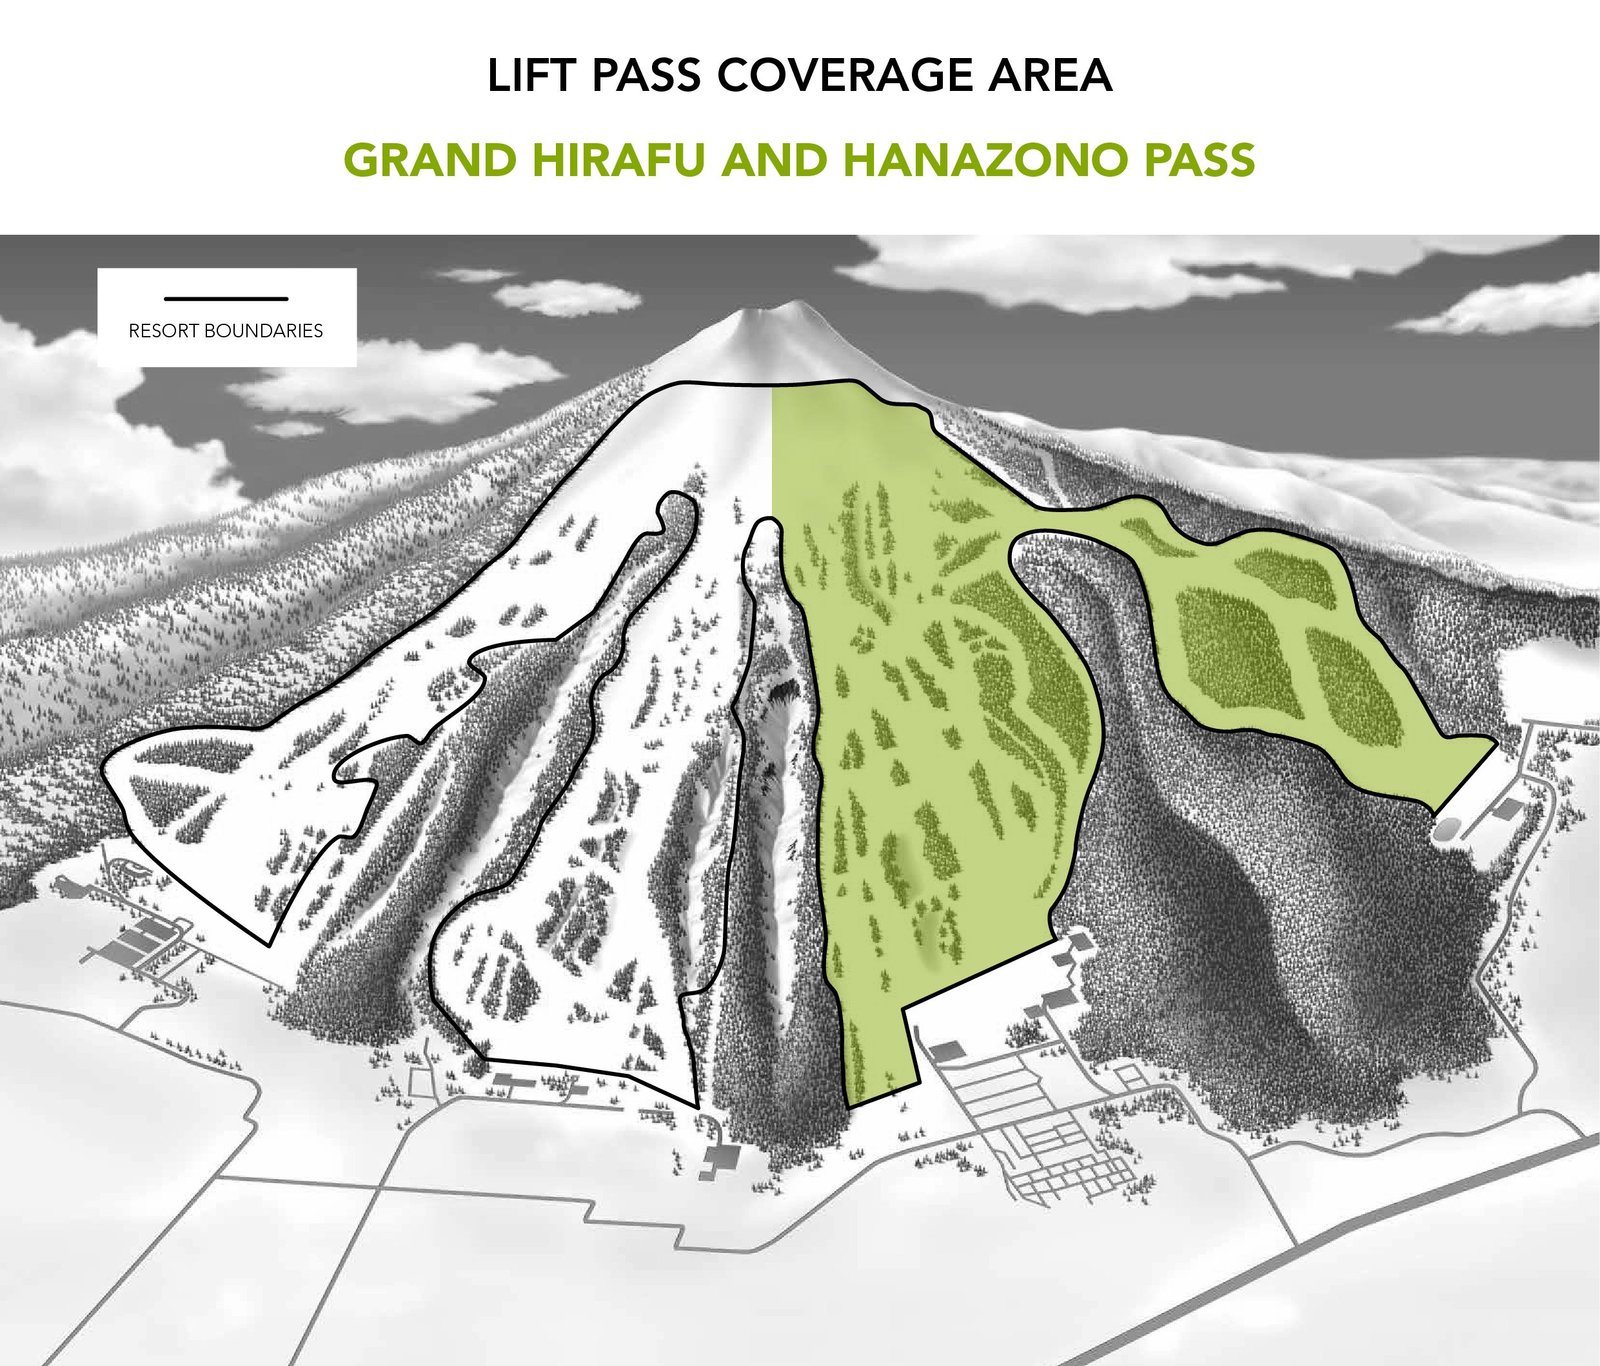 grand hirafu hanazono lift pass coverage area